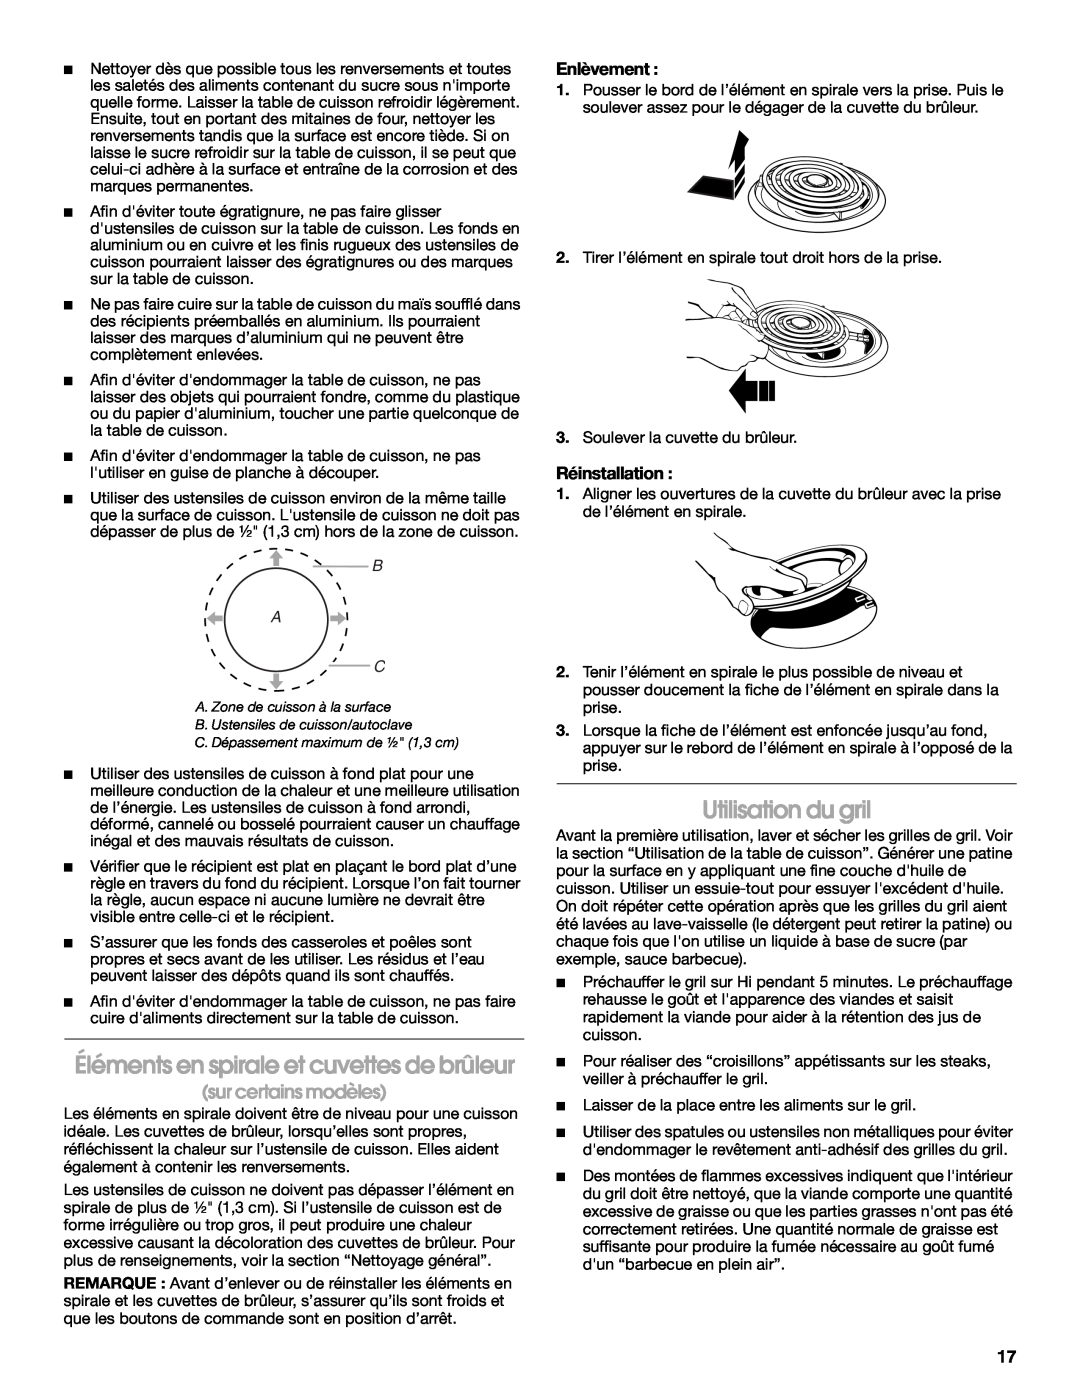 Jenn-Air 20 manual Éléments en spirale et cuvettes de brûleur, Utilisation du gril, Enlèvement, Réinstallation, B A C 